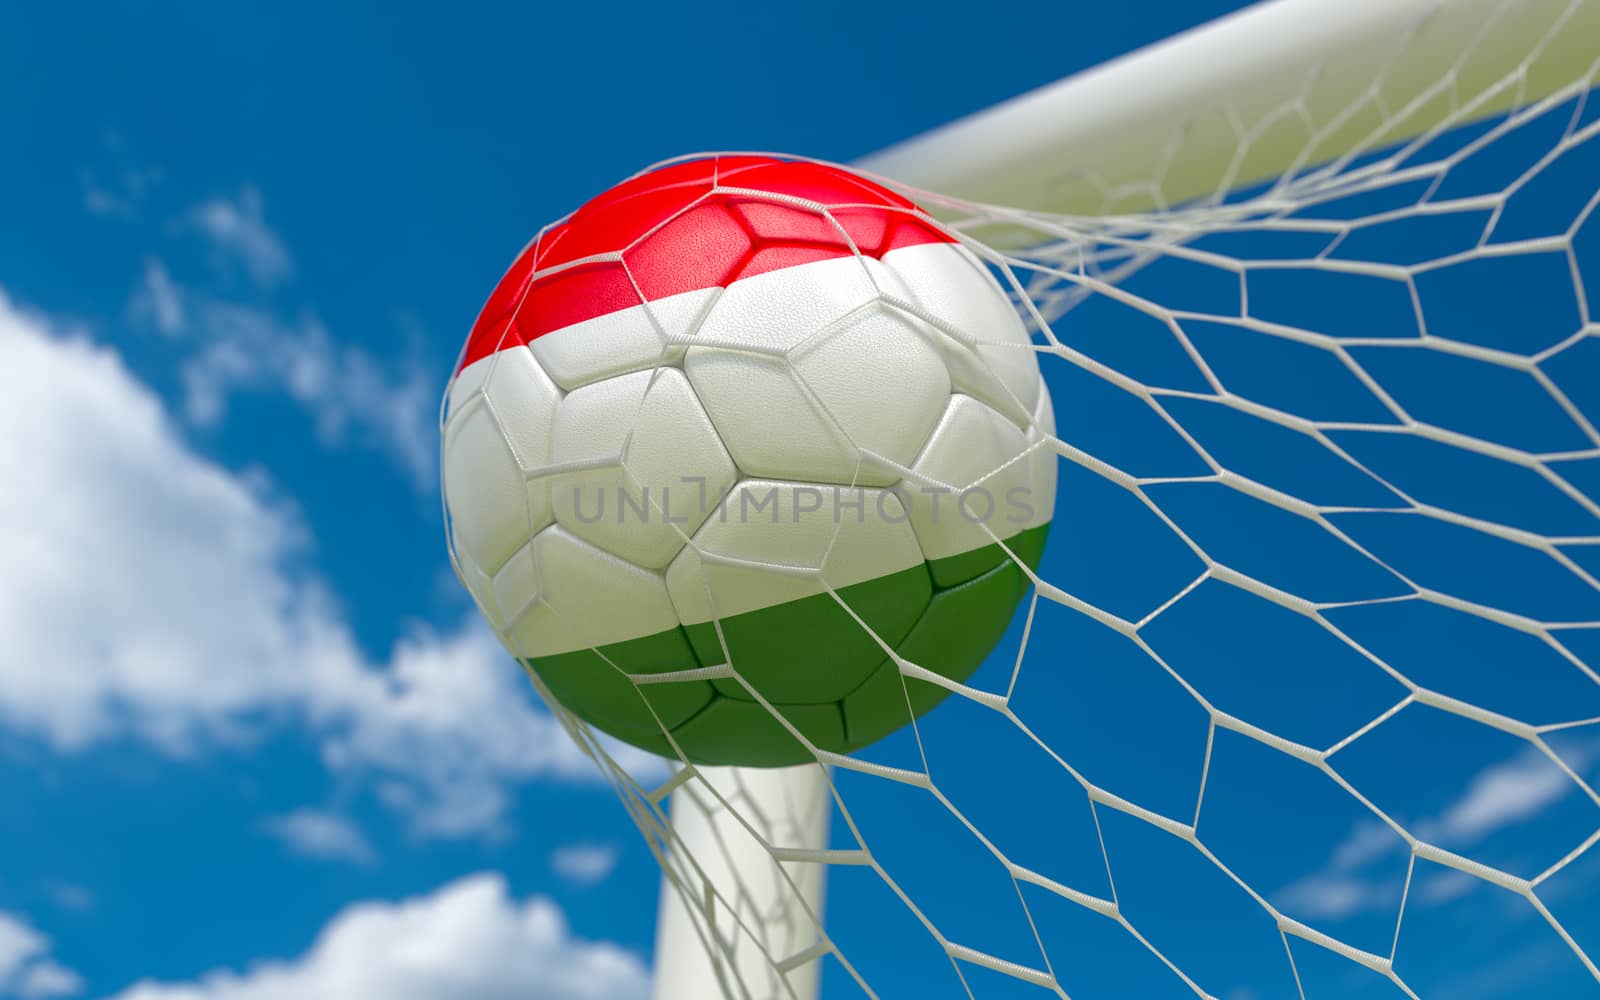 Hungary flag and soccer ball in goal net by Barbraford